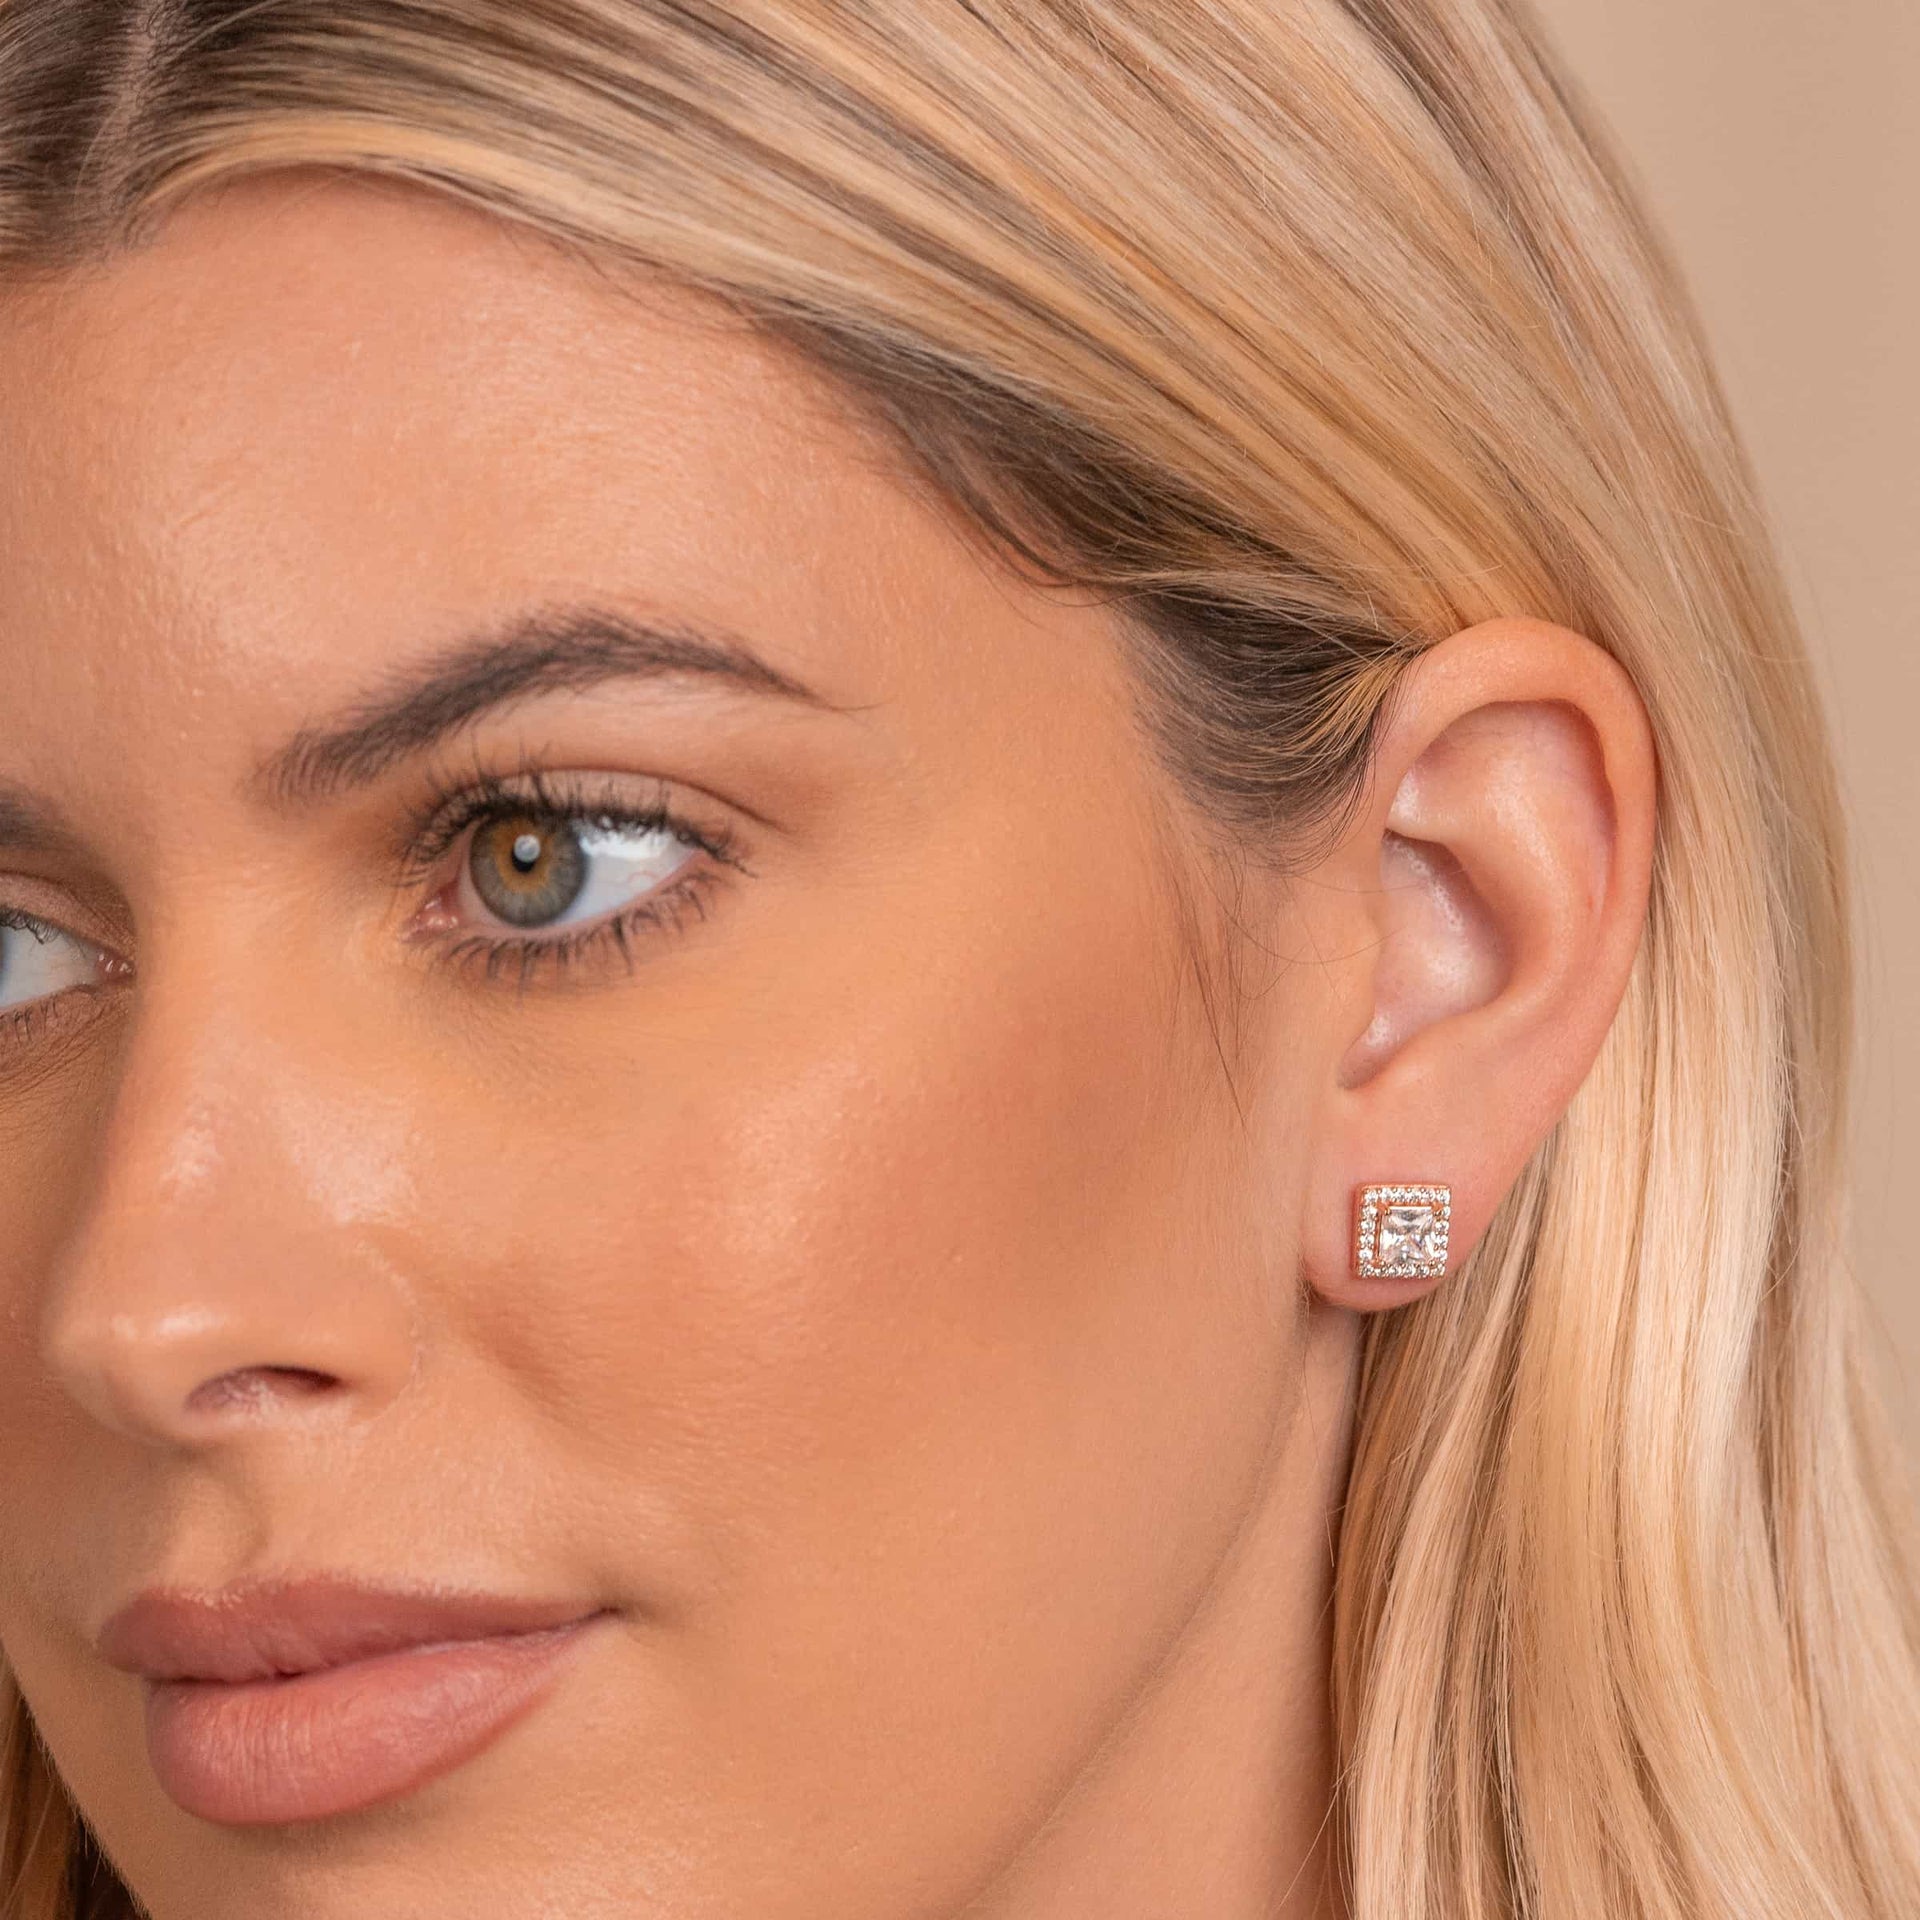 Rose gold stud earrings on model